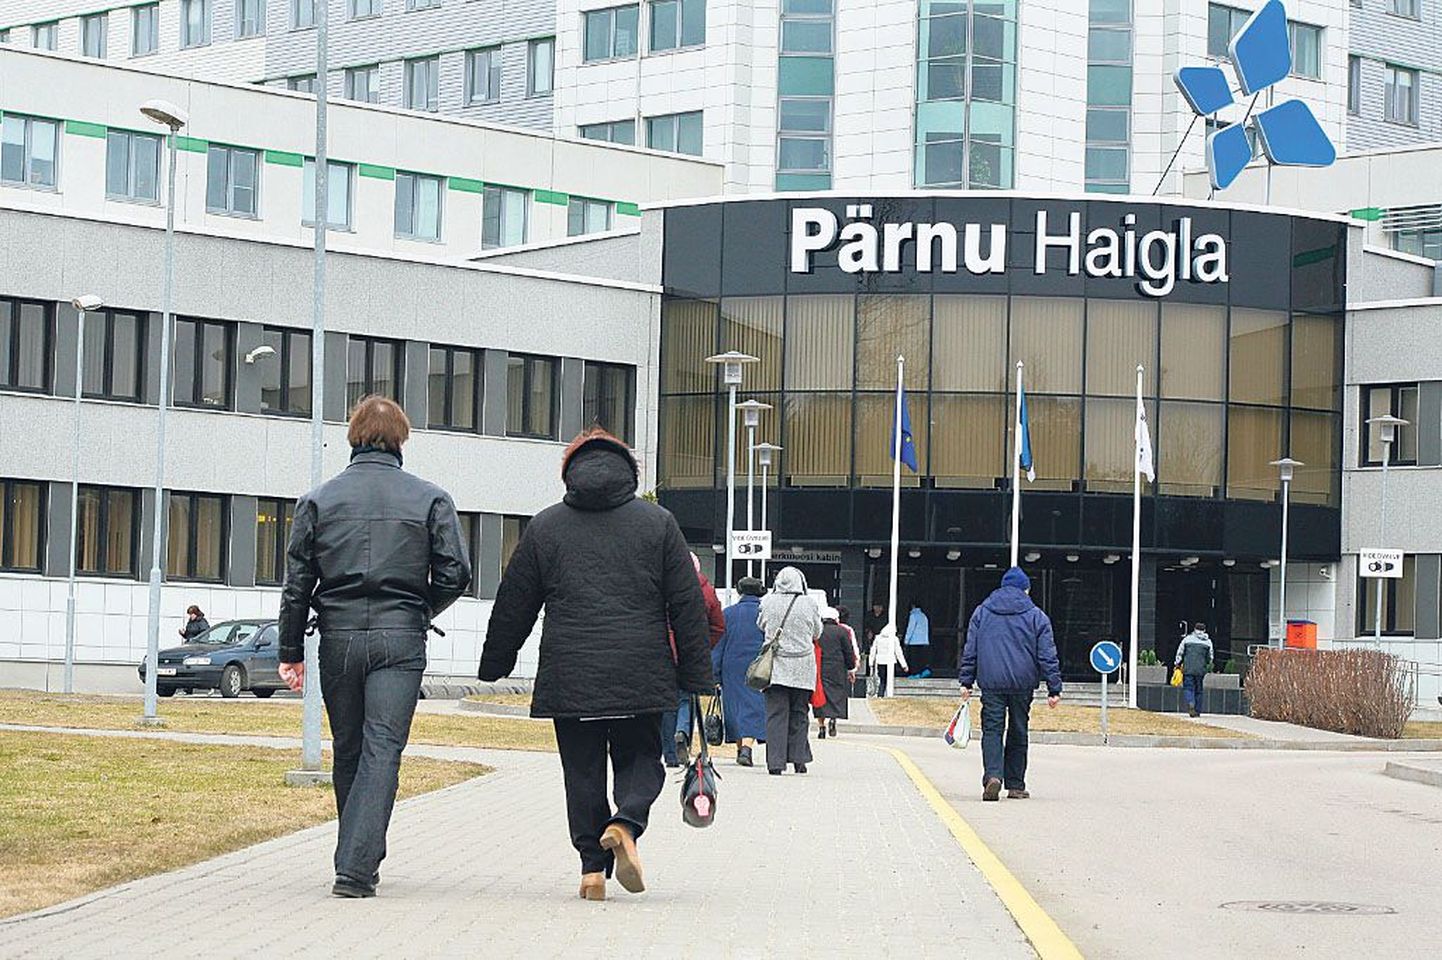 Pärnu haigla, nagu seda praegu tunneme. Plaanist võtmeteni kulus 20 aastat, uus korpus lisandus 2013. aastal. Haigla areng jätkub.